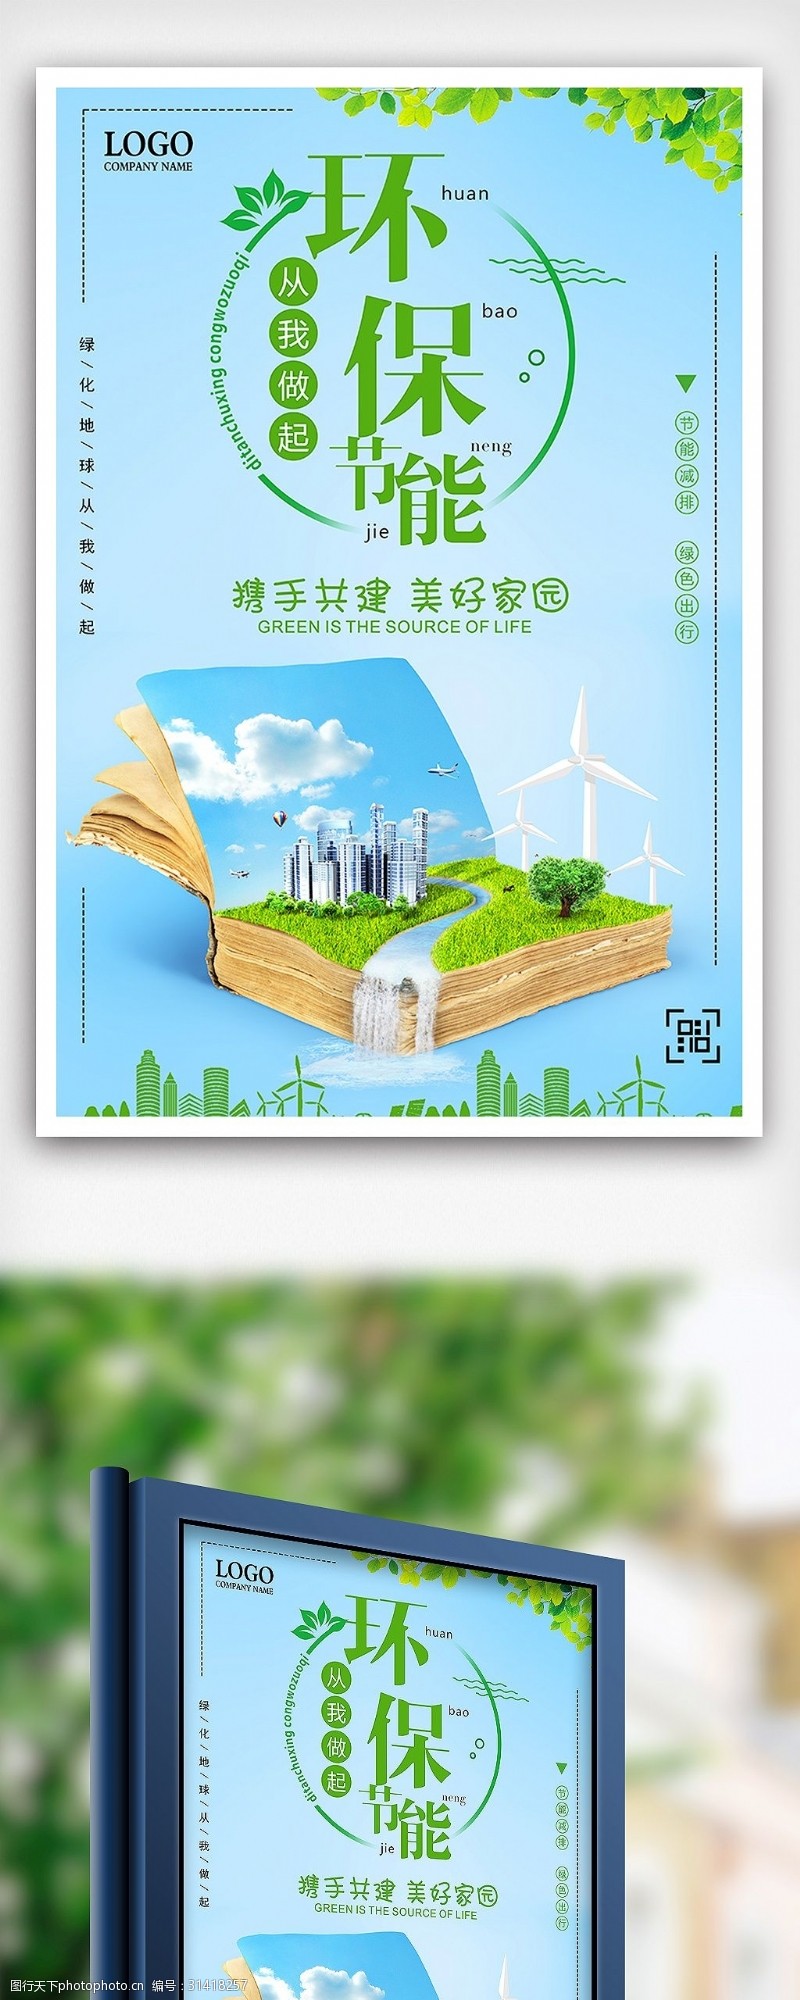 淘宝海报免费下载环保节能共建美好家园低碳环保公益海报